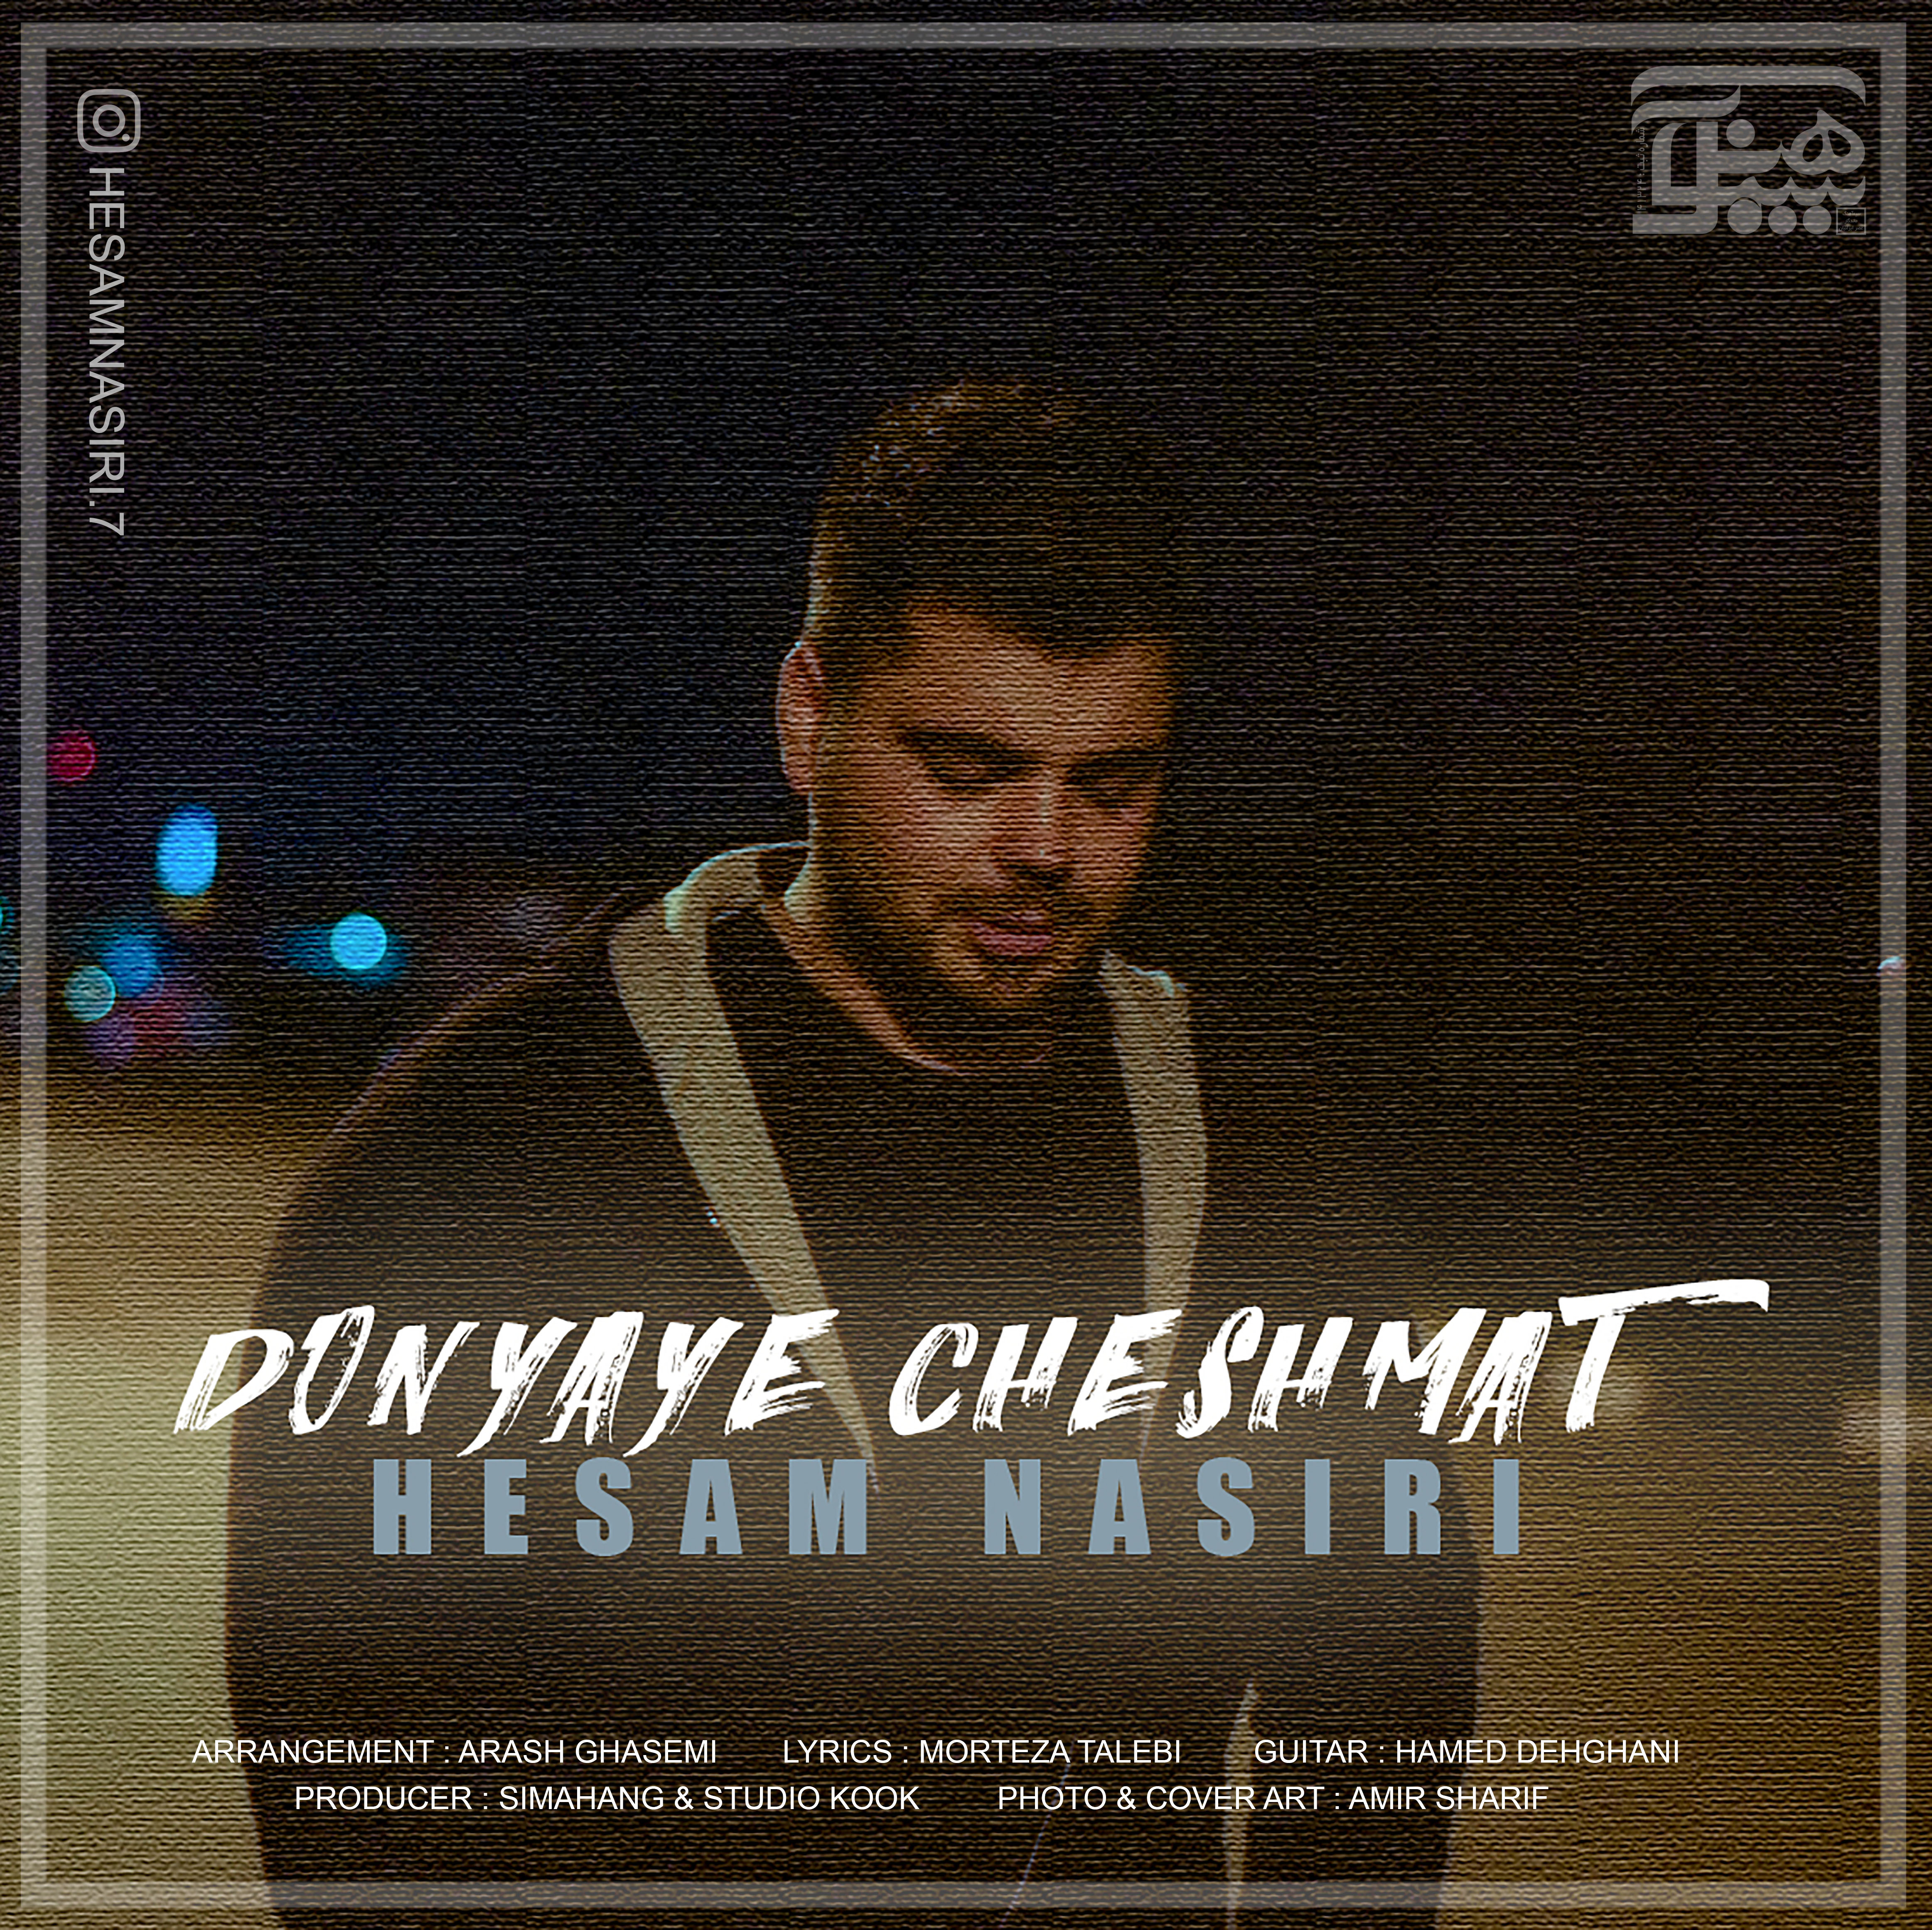  دانلود آهنگ جدید حسام نصیری - دنیای چشمات | Download New Music By Hesam Nasiri - Donyaye Cheshmat